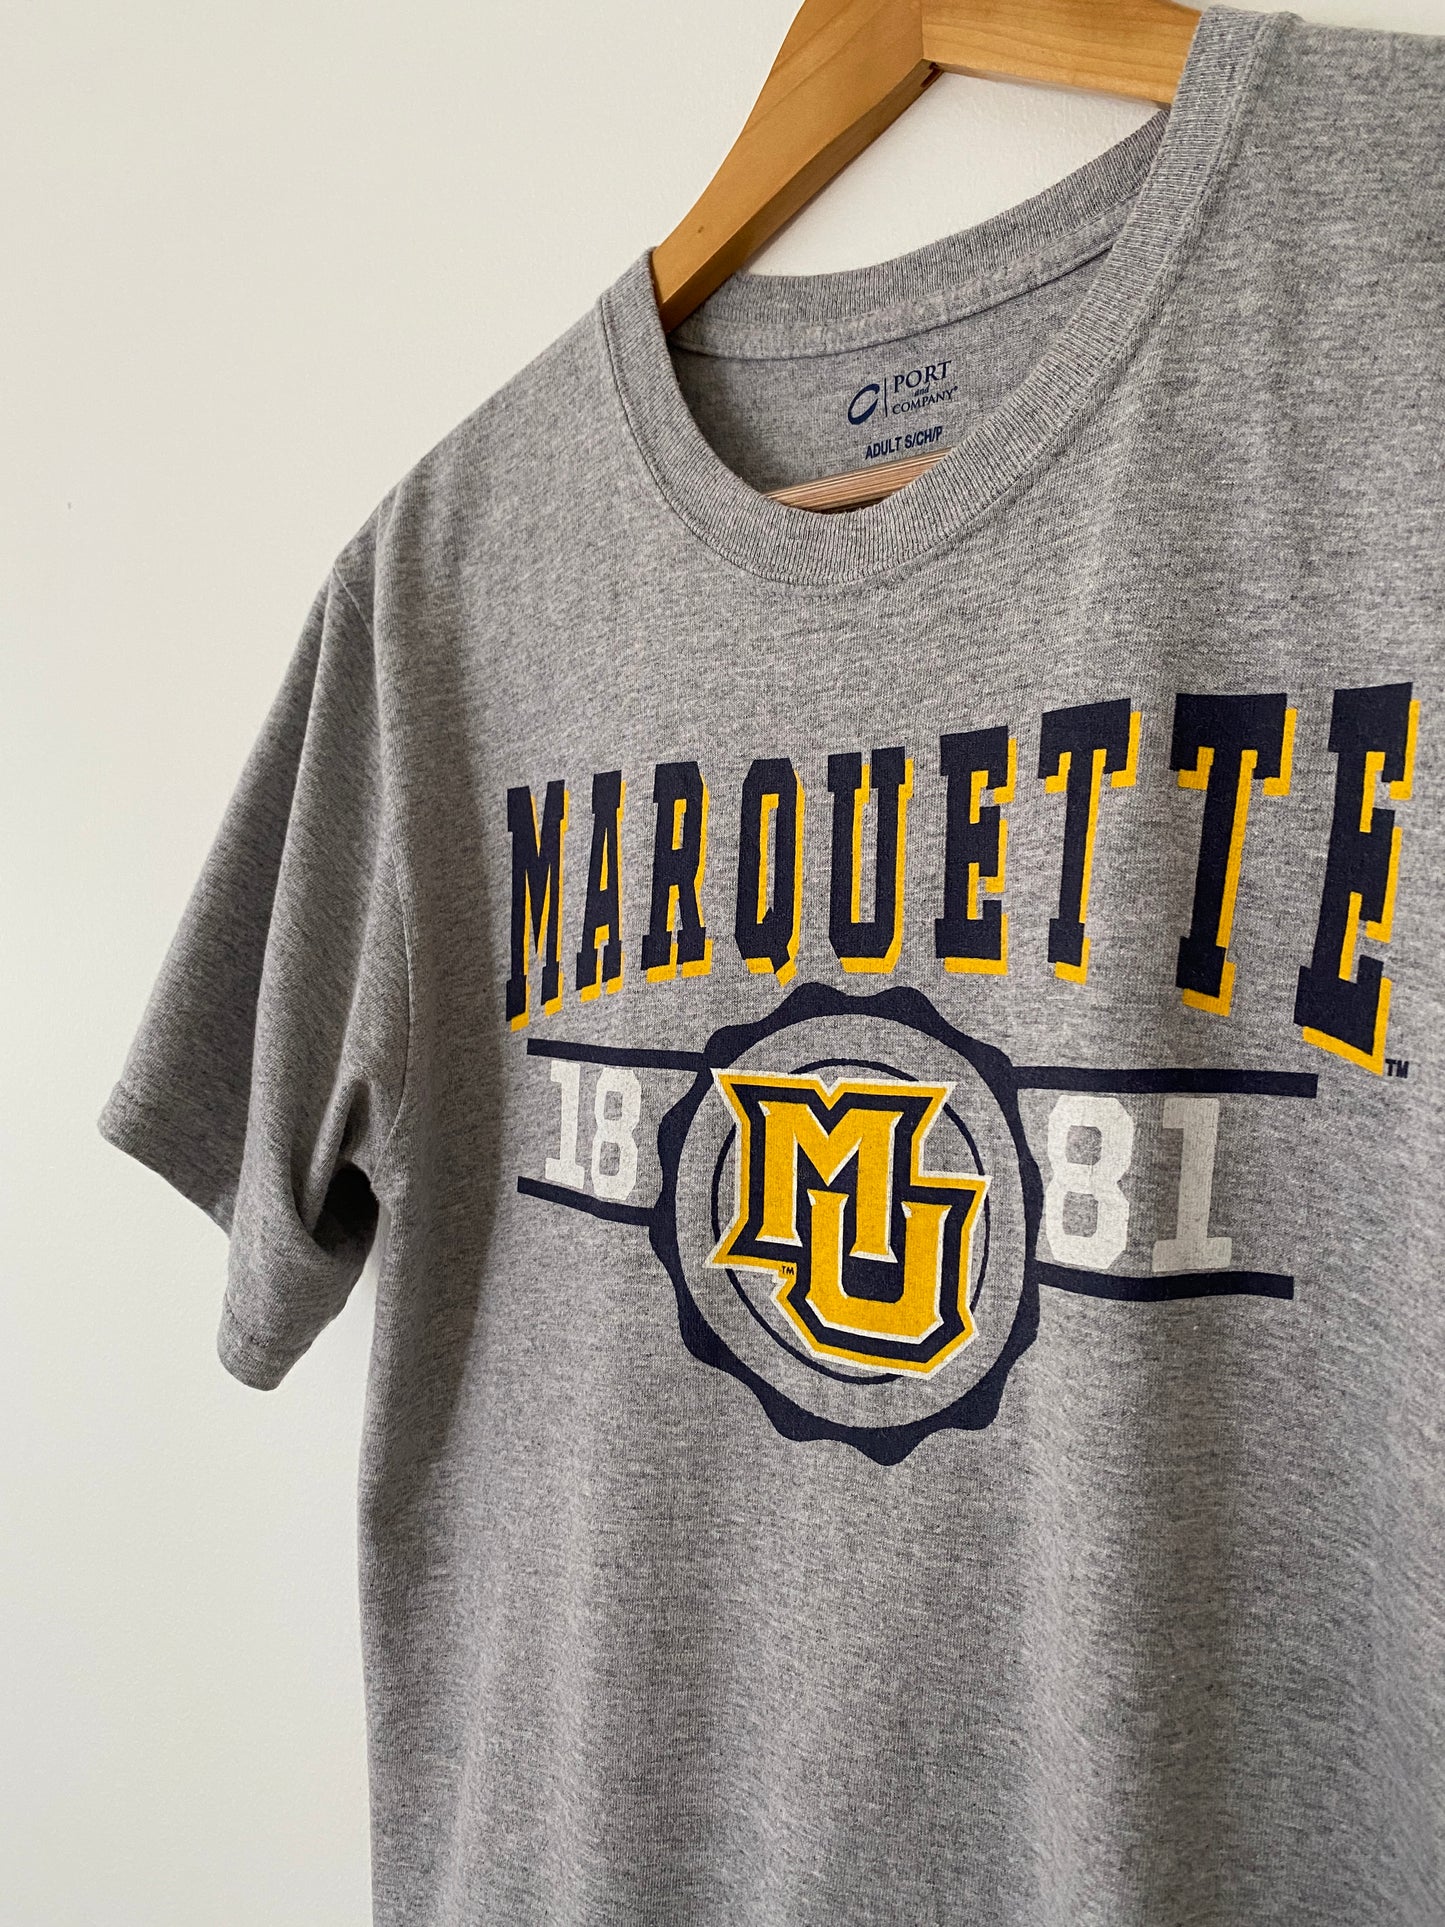 Marquette University Golden Eagles T-Shirt - S